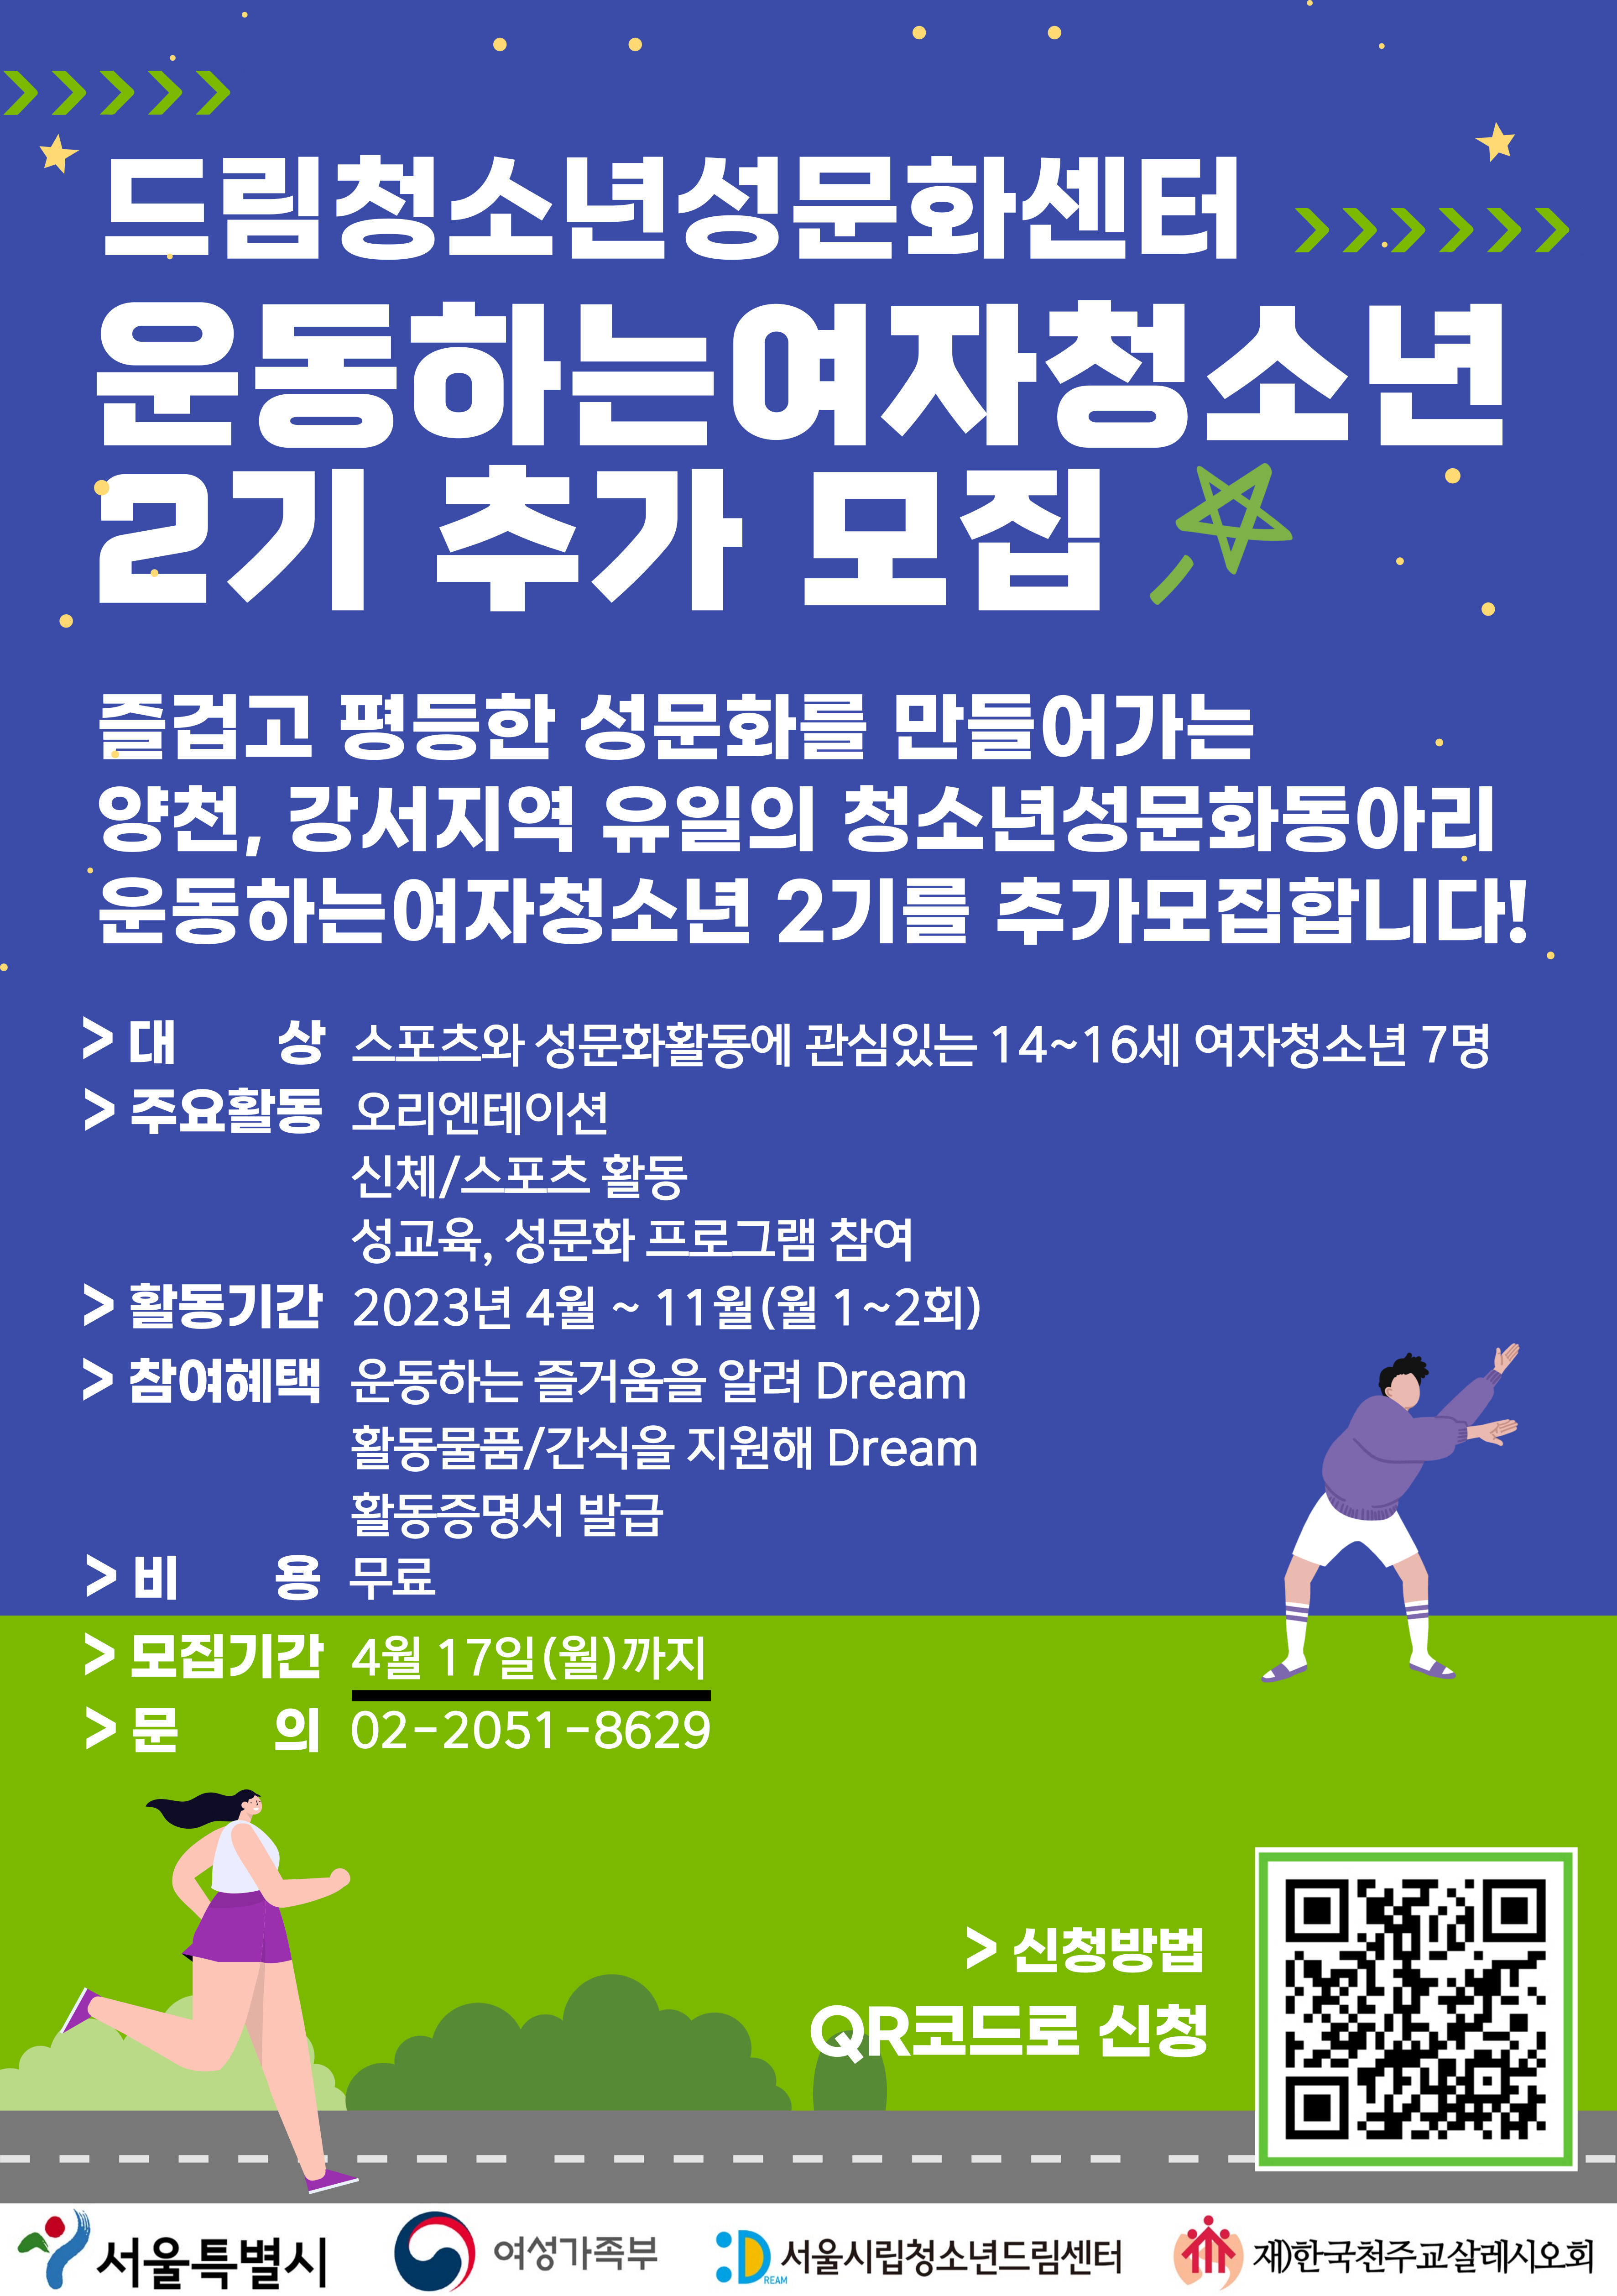 0403 운동하는여자청소년 2기 모집 포스터(추가 모집).jpg